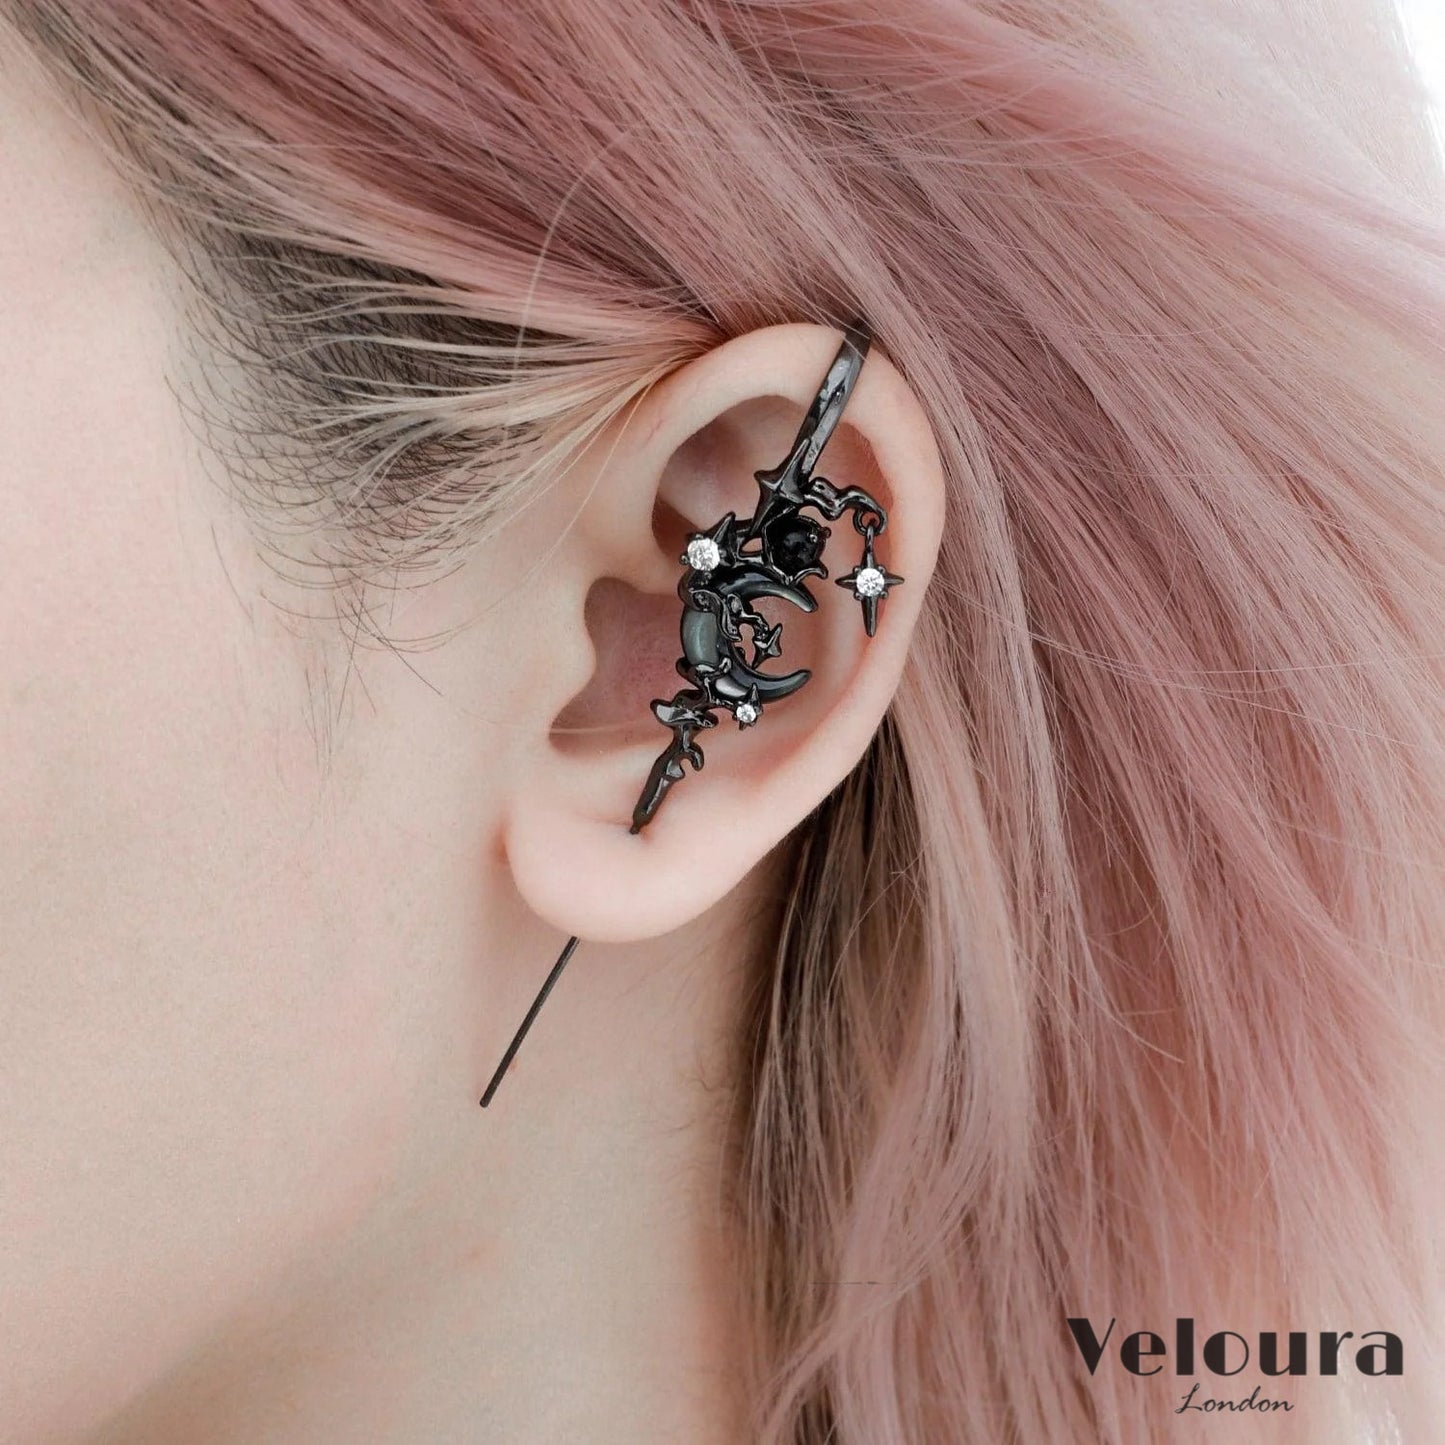 Veloura™ Lunar Charm Earrings